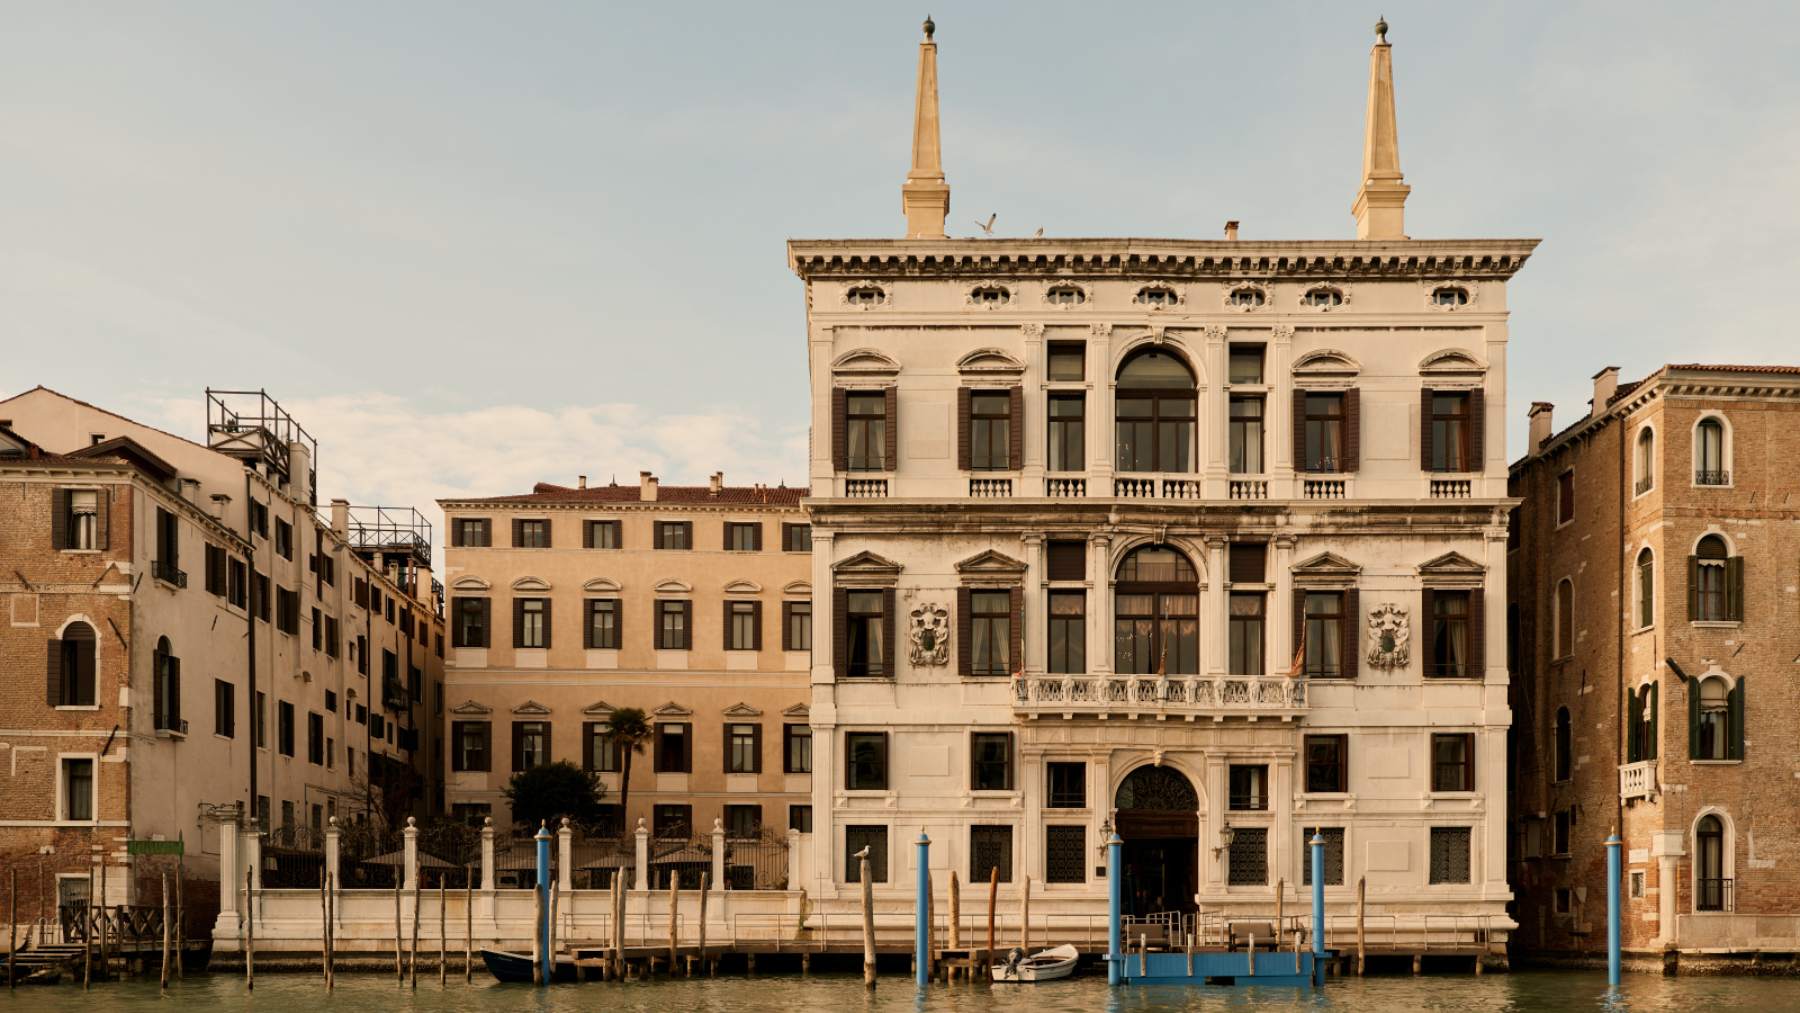 El hotel escondido en Venecia repleto de arte al que escaparse en Semana Santa